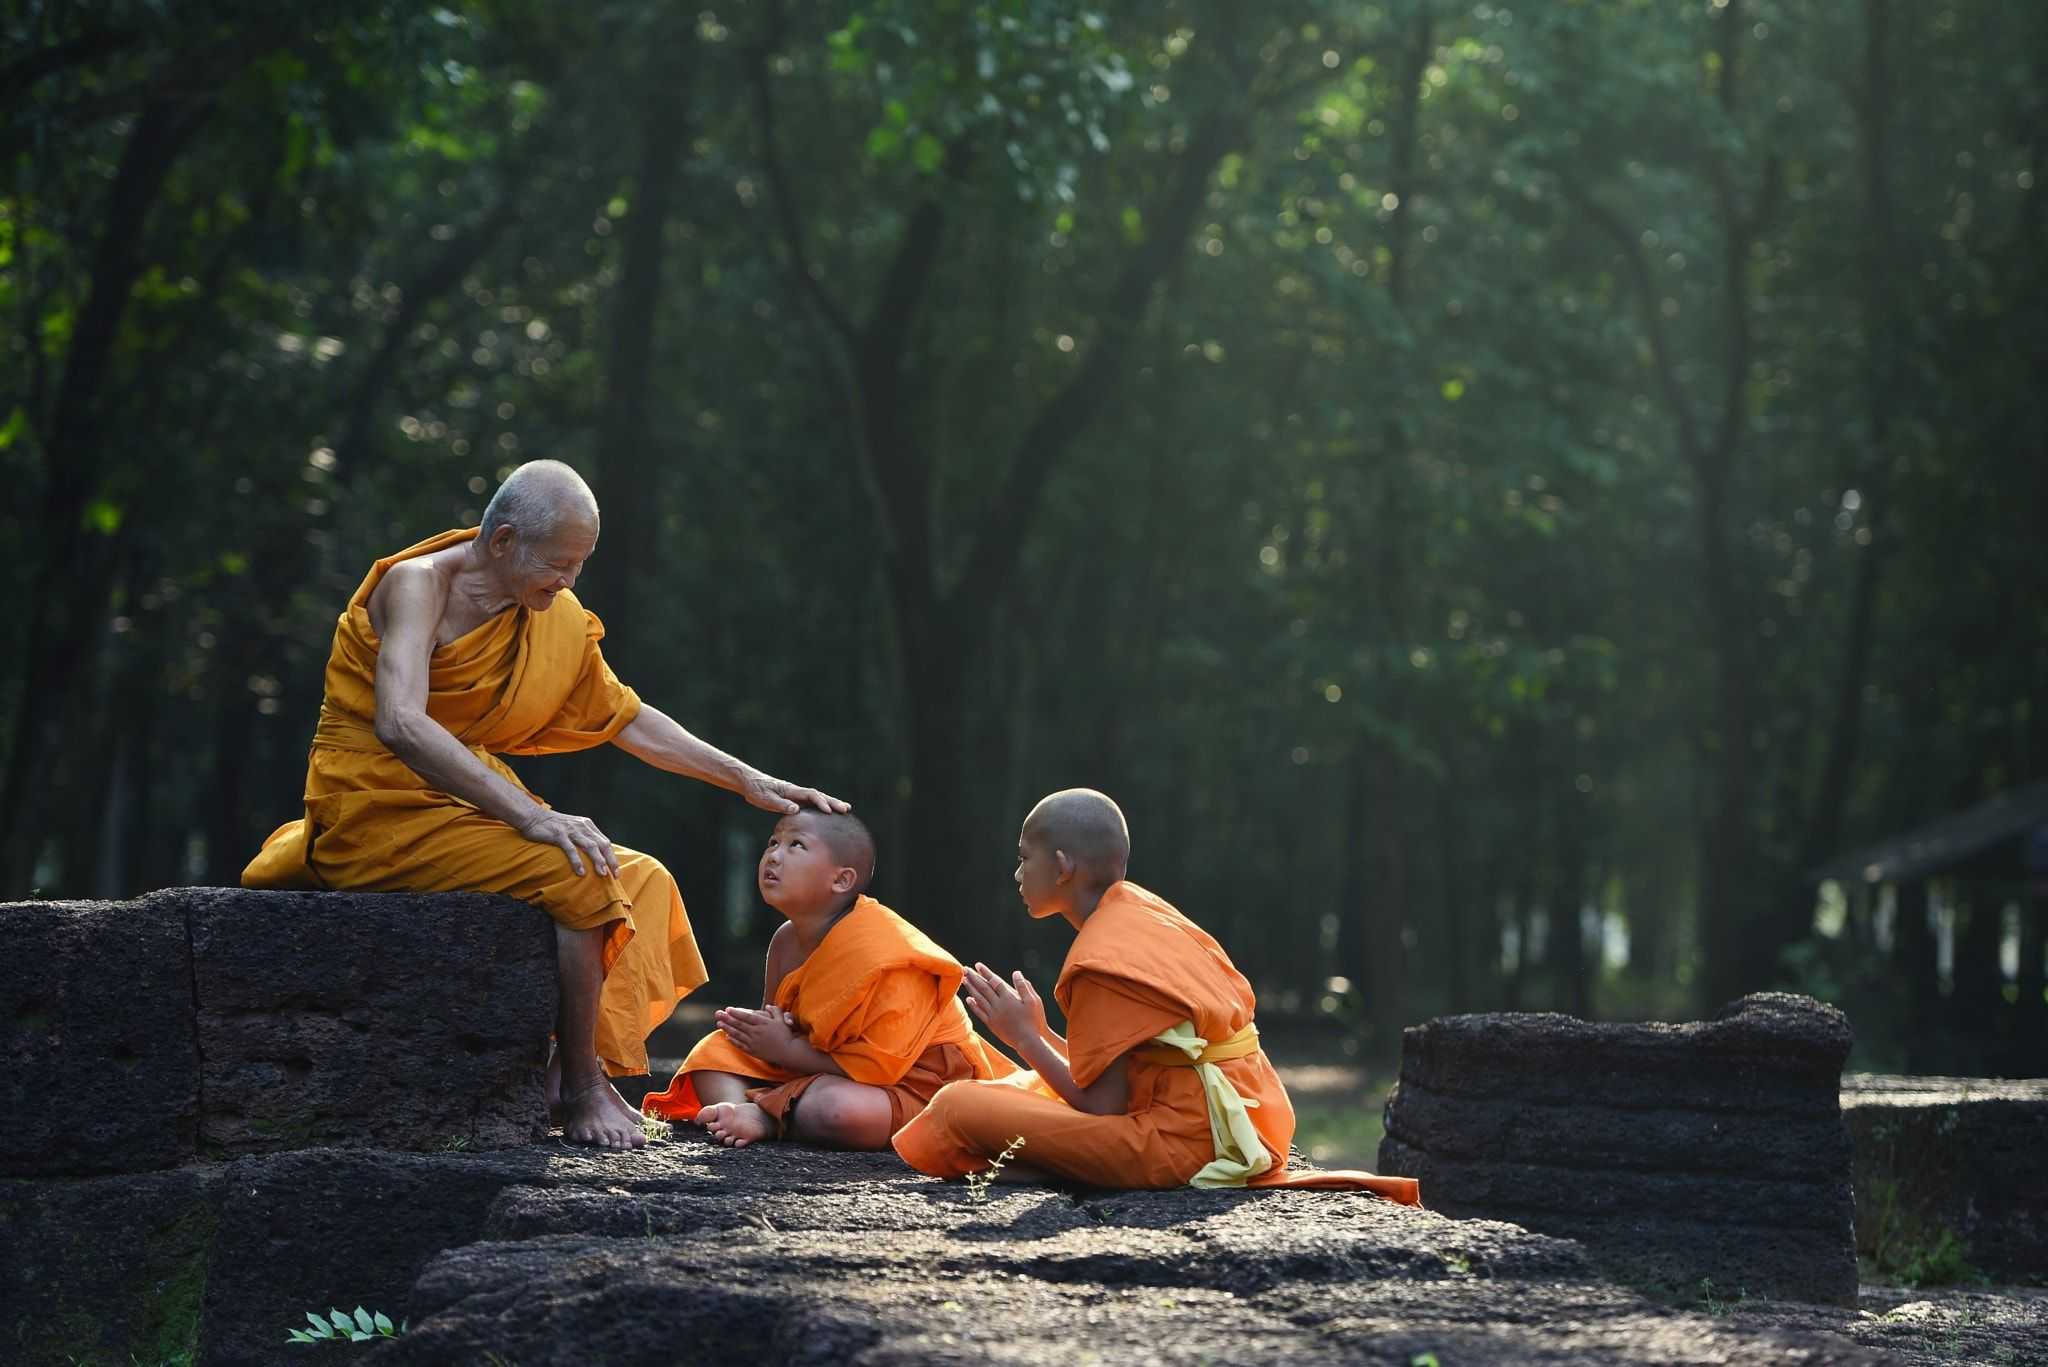 Monje budista de 195 años